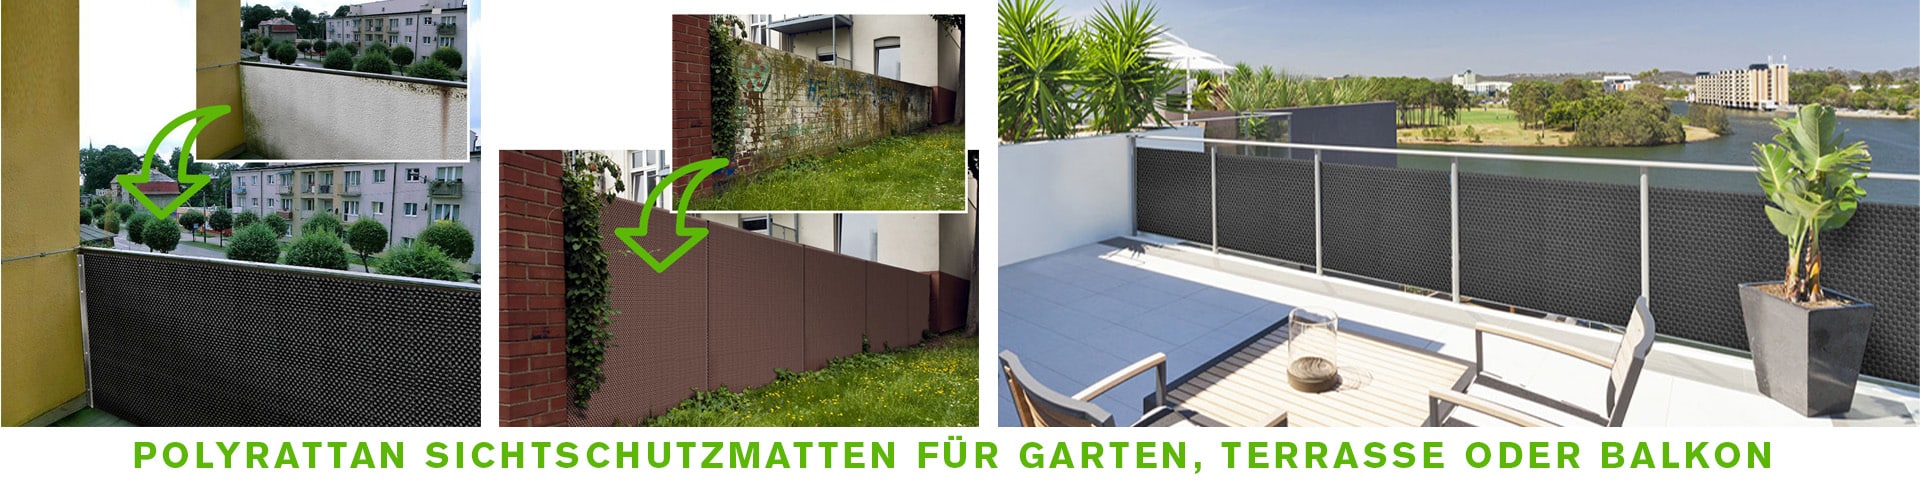 Polyrattan Sichtschutzmatten für Garten, Terrasse oder Balkon